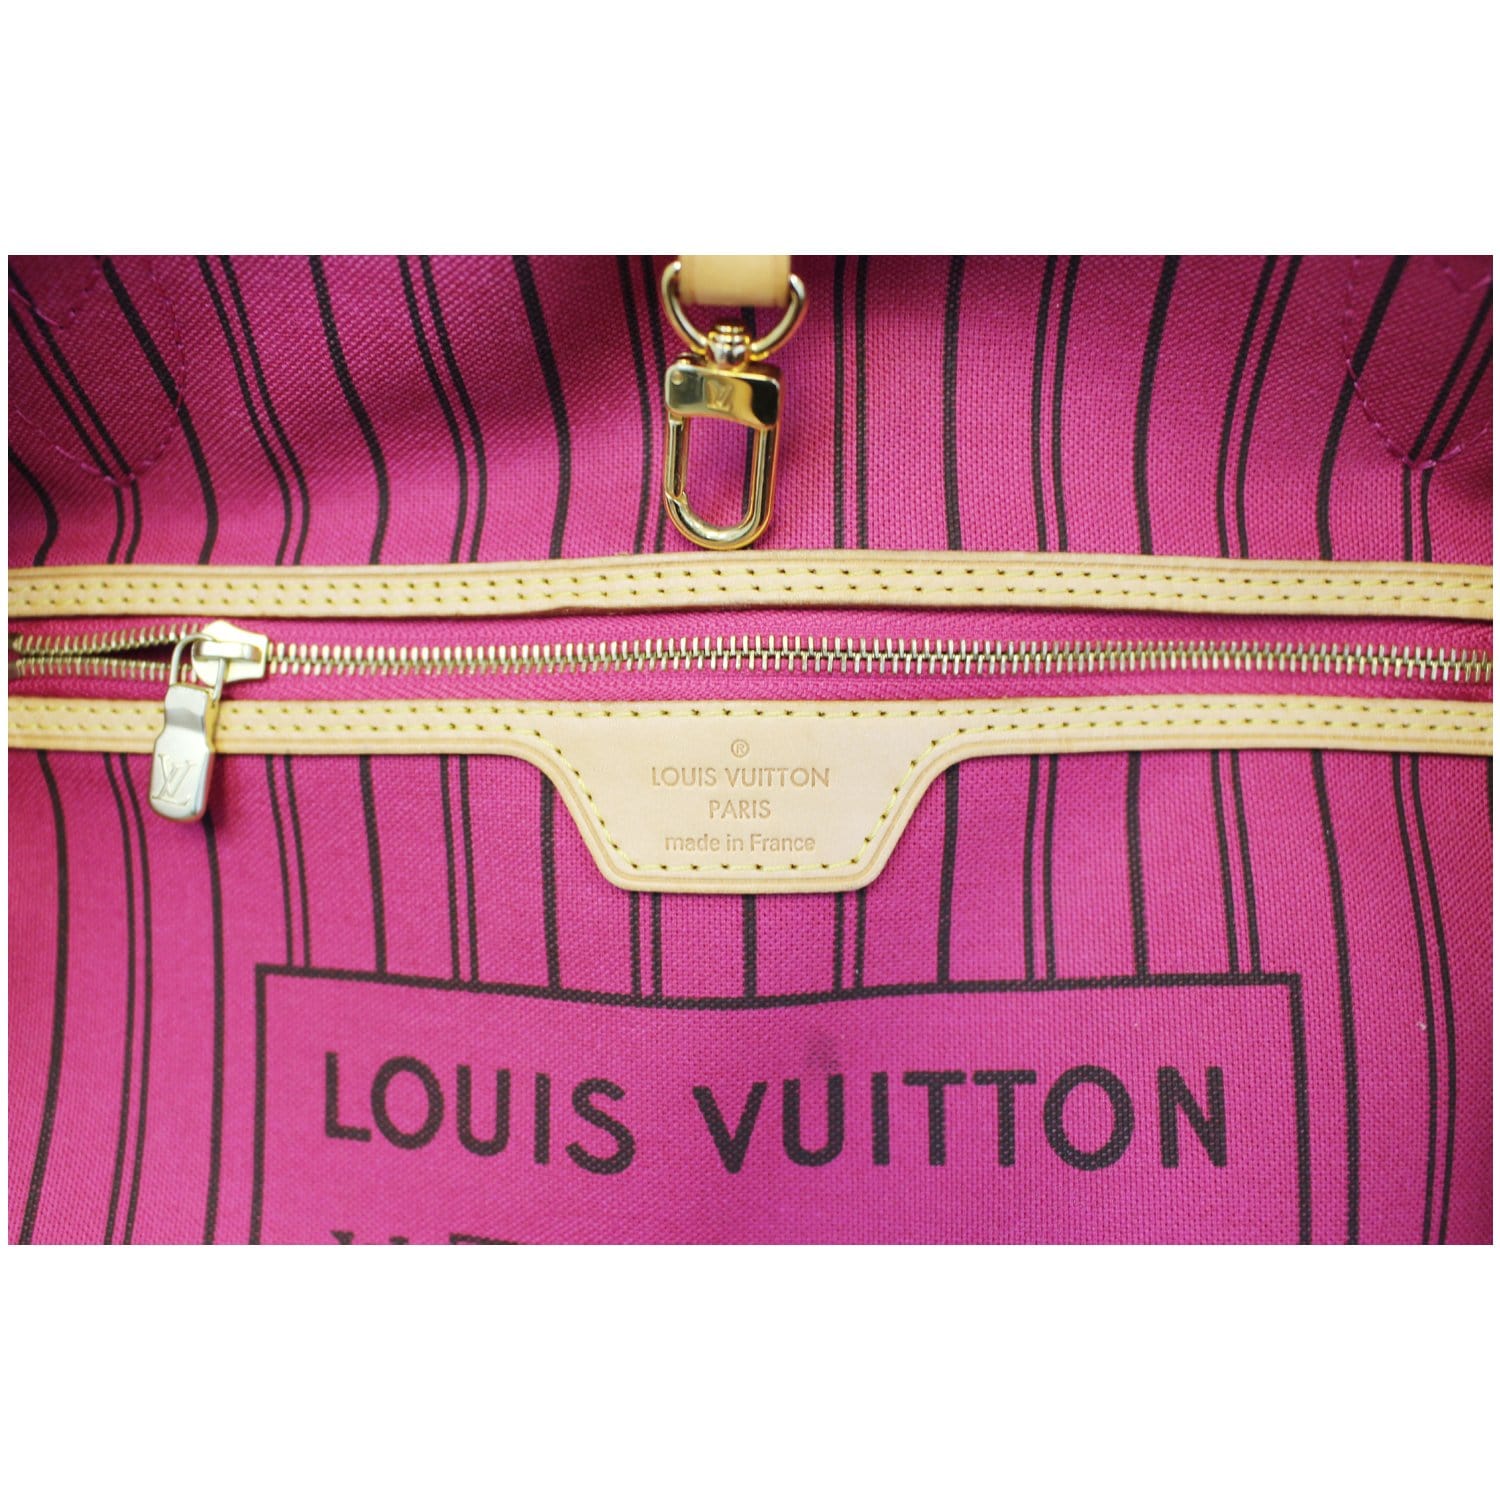 8 Grown-Up Charms to Add Flair to Your Handbag  Louis vuitton sunglasses,  Louis vuitton, Louis vuitton bag neverfull